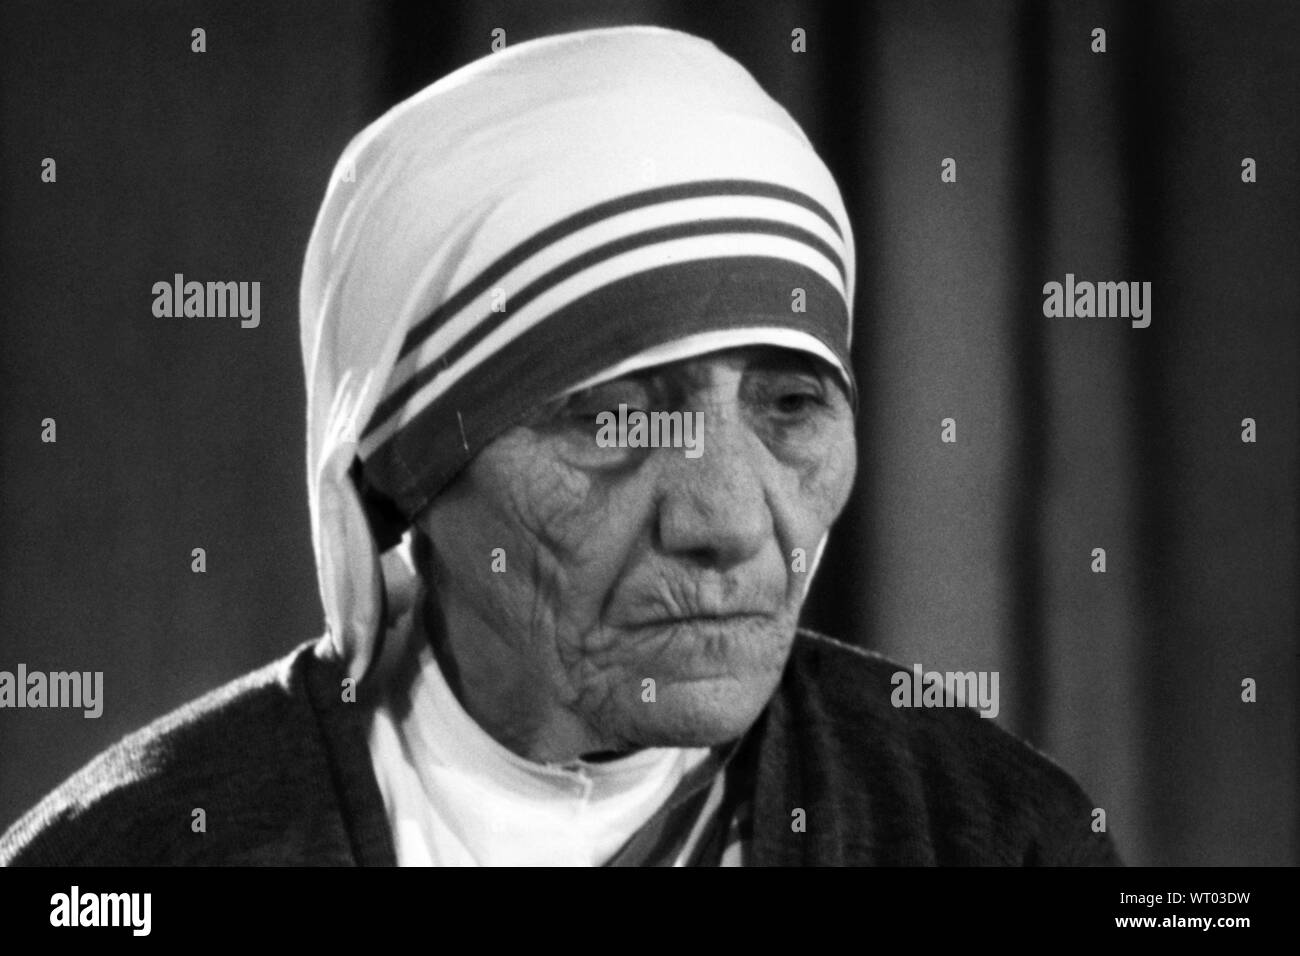 Mutter Teresa (Anjezë Gonxhe Bojaxhiu), Albanisch-born Römisch-katholische Nonne, Kalkutta Missionar und Gründer der Kongregation der Missionarinnen von der Nächstenliebe. Foto von Bernard Gotfryd, 1971. Stockfoto